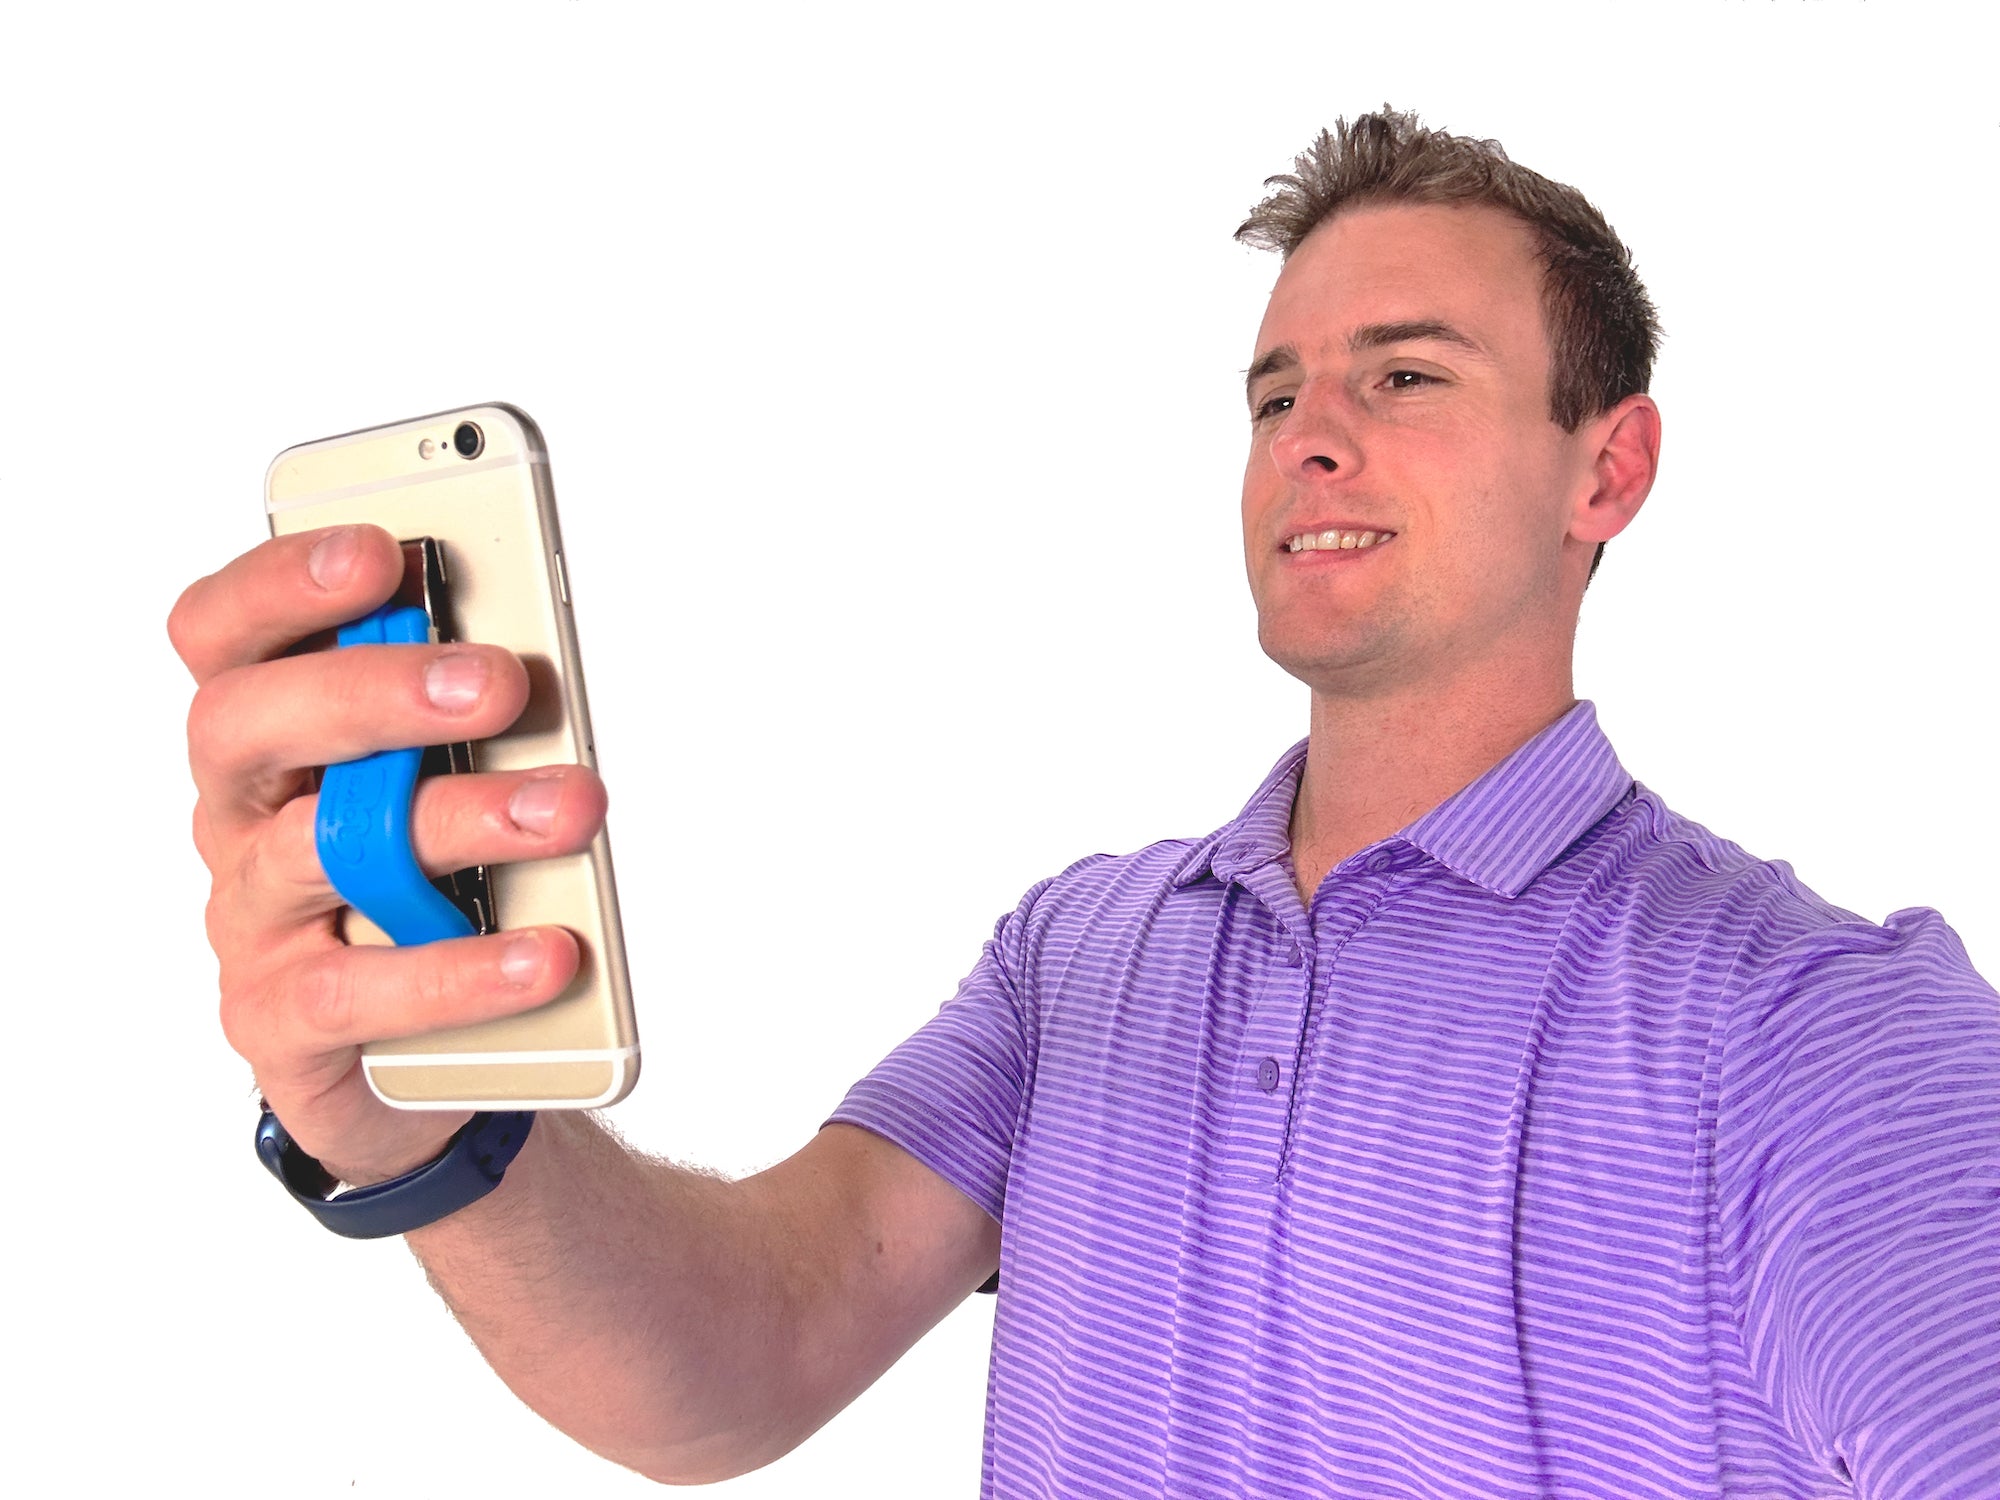 Phone Grip Clip